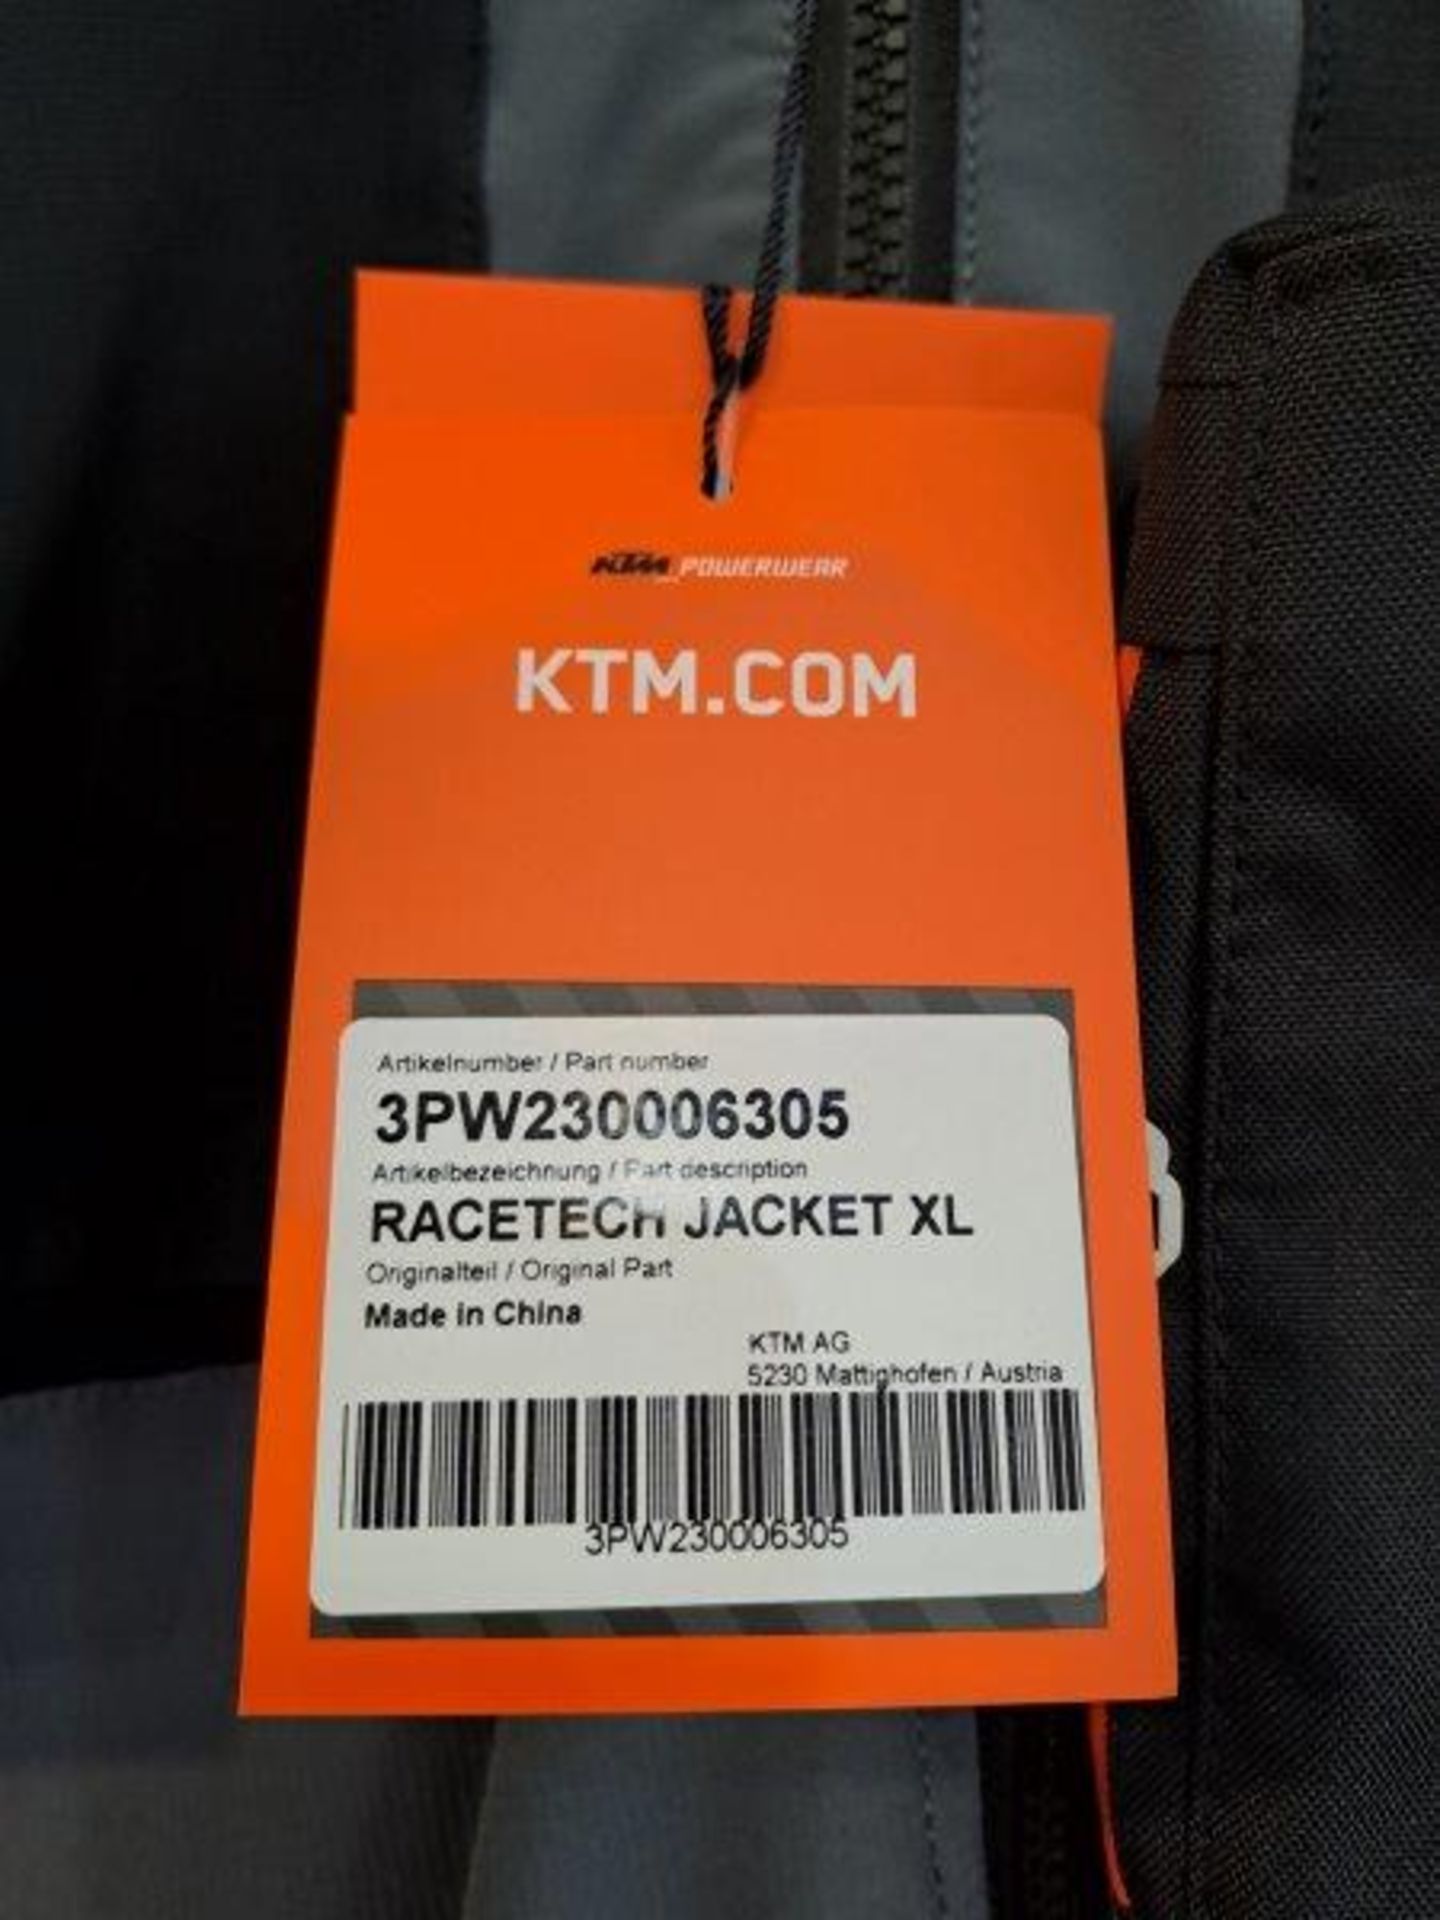 KTM Racetek XL Motorbike Jacket - Image 4 of 8